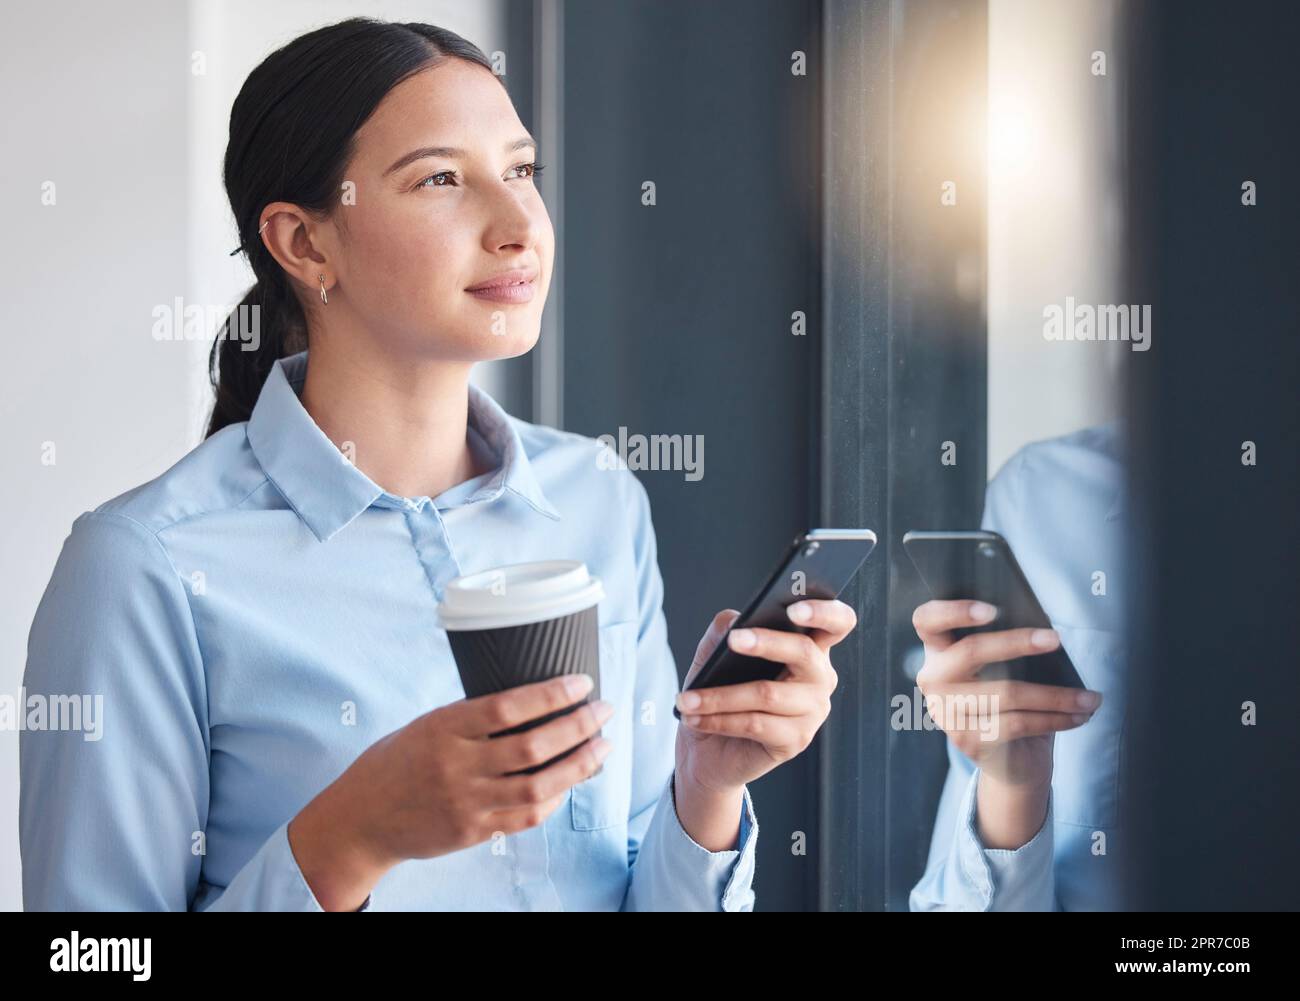 Donna d'affari seria che pensa, guardando la vista dalla finestra mentre beve un caffè, si connette a un'app online. Un professionista che si prende una pausa, scrivendo sul suo smartphone Foto Stock